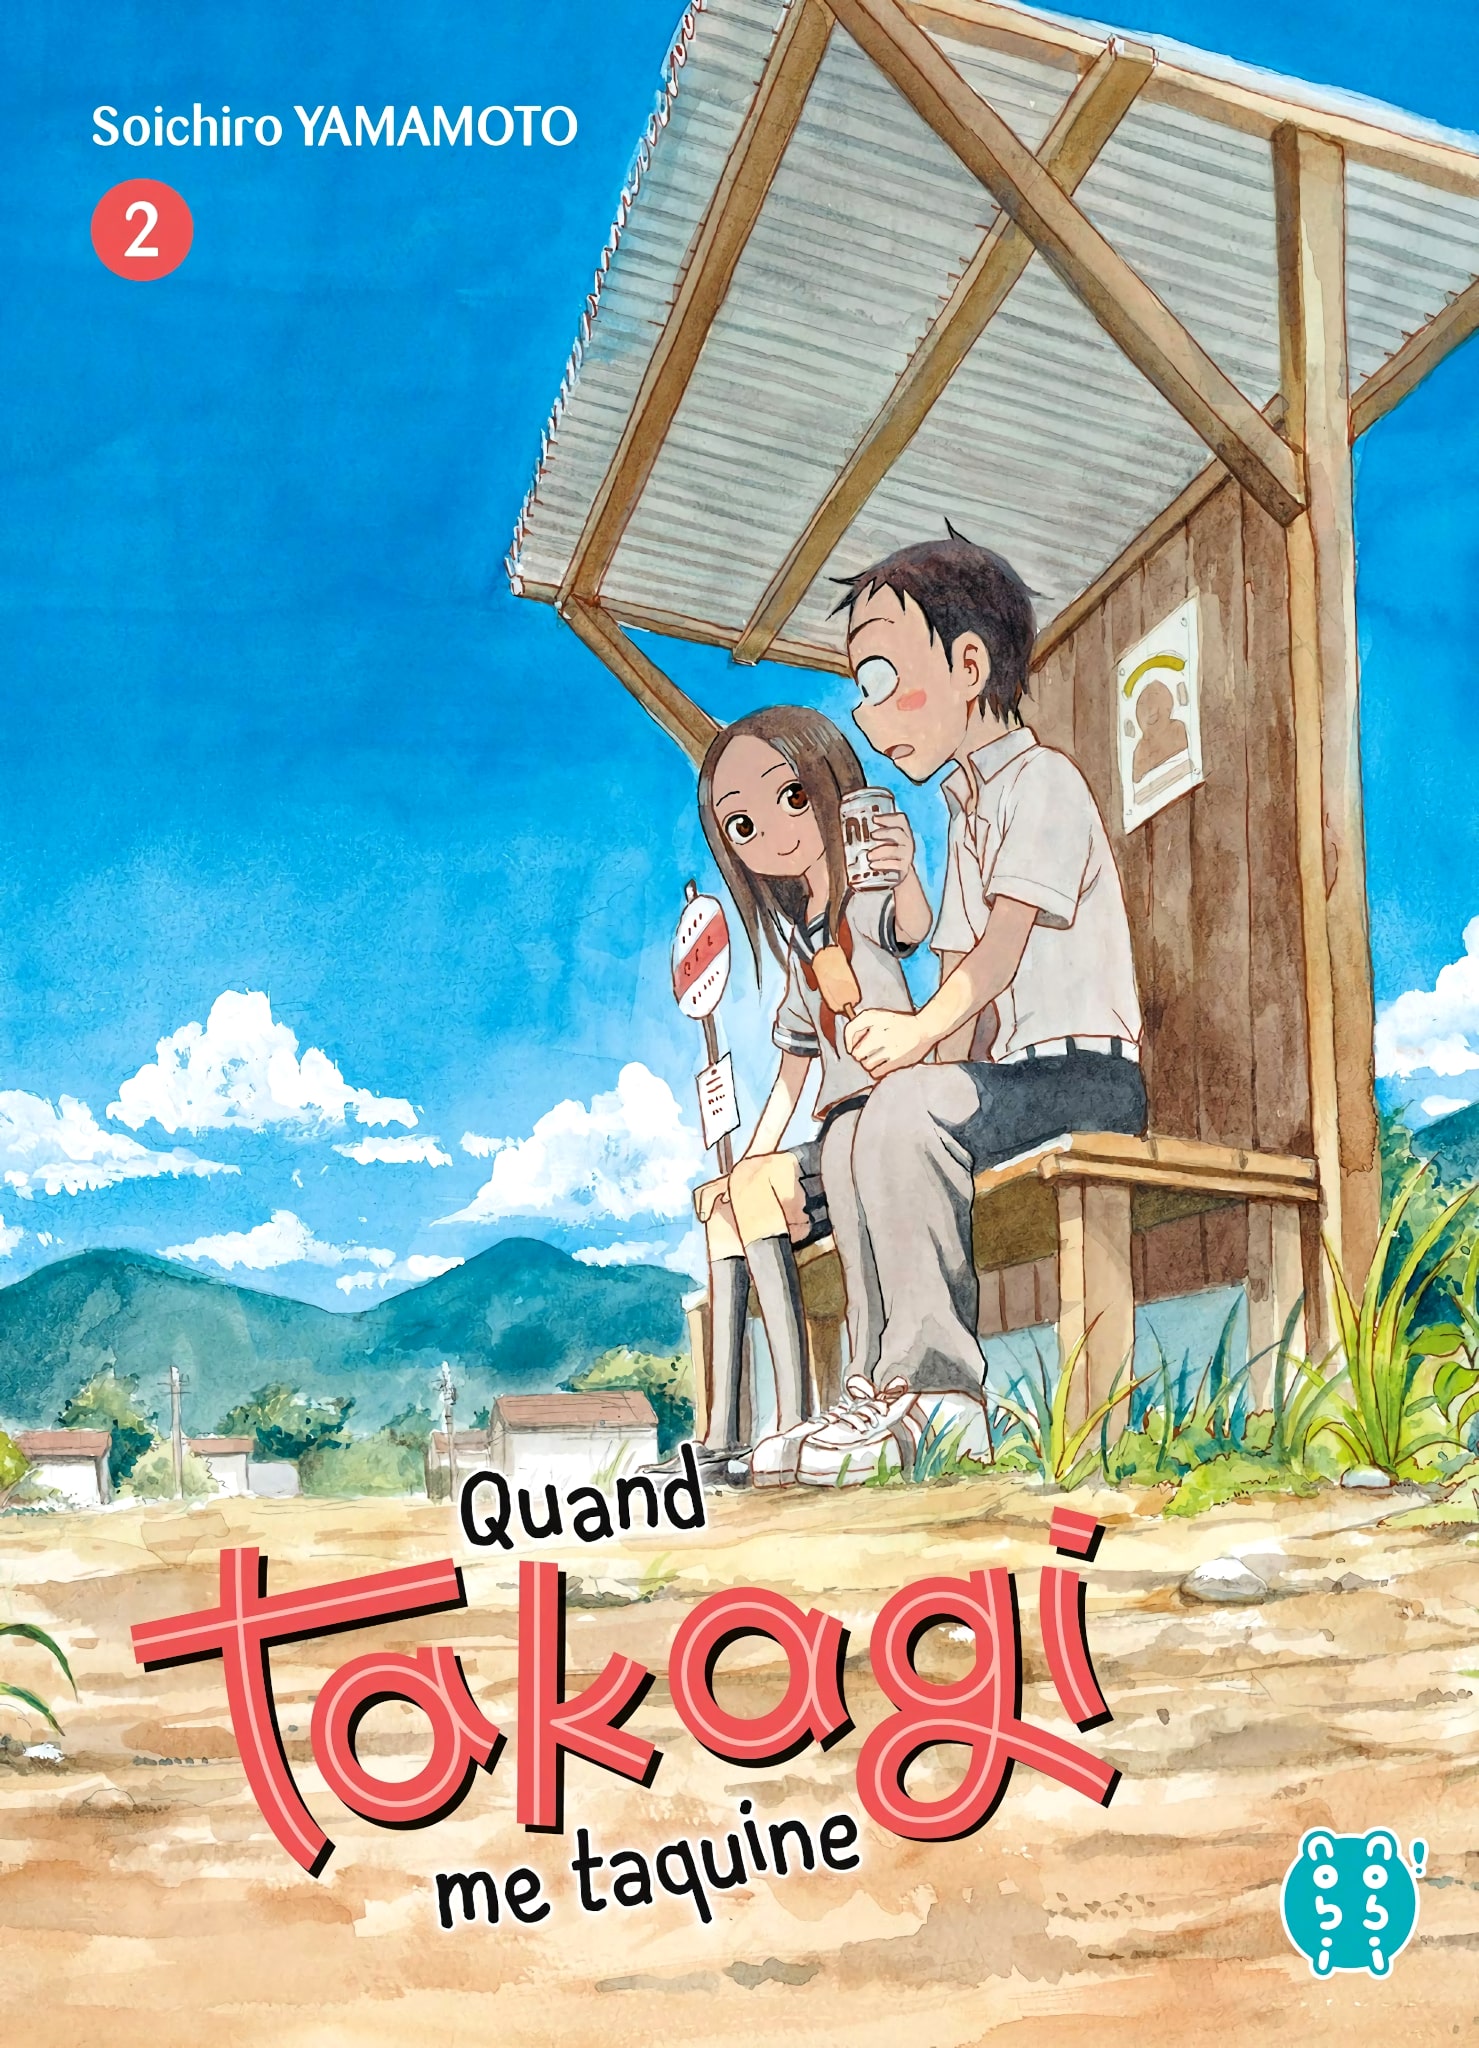 Tome 2 du manga Quand Takagi me Taquine